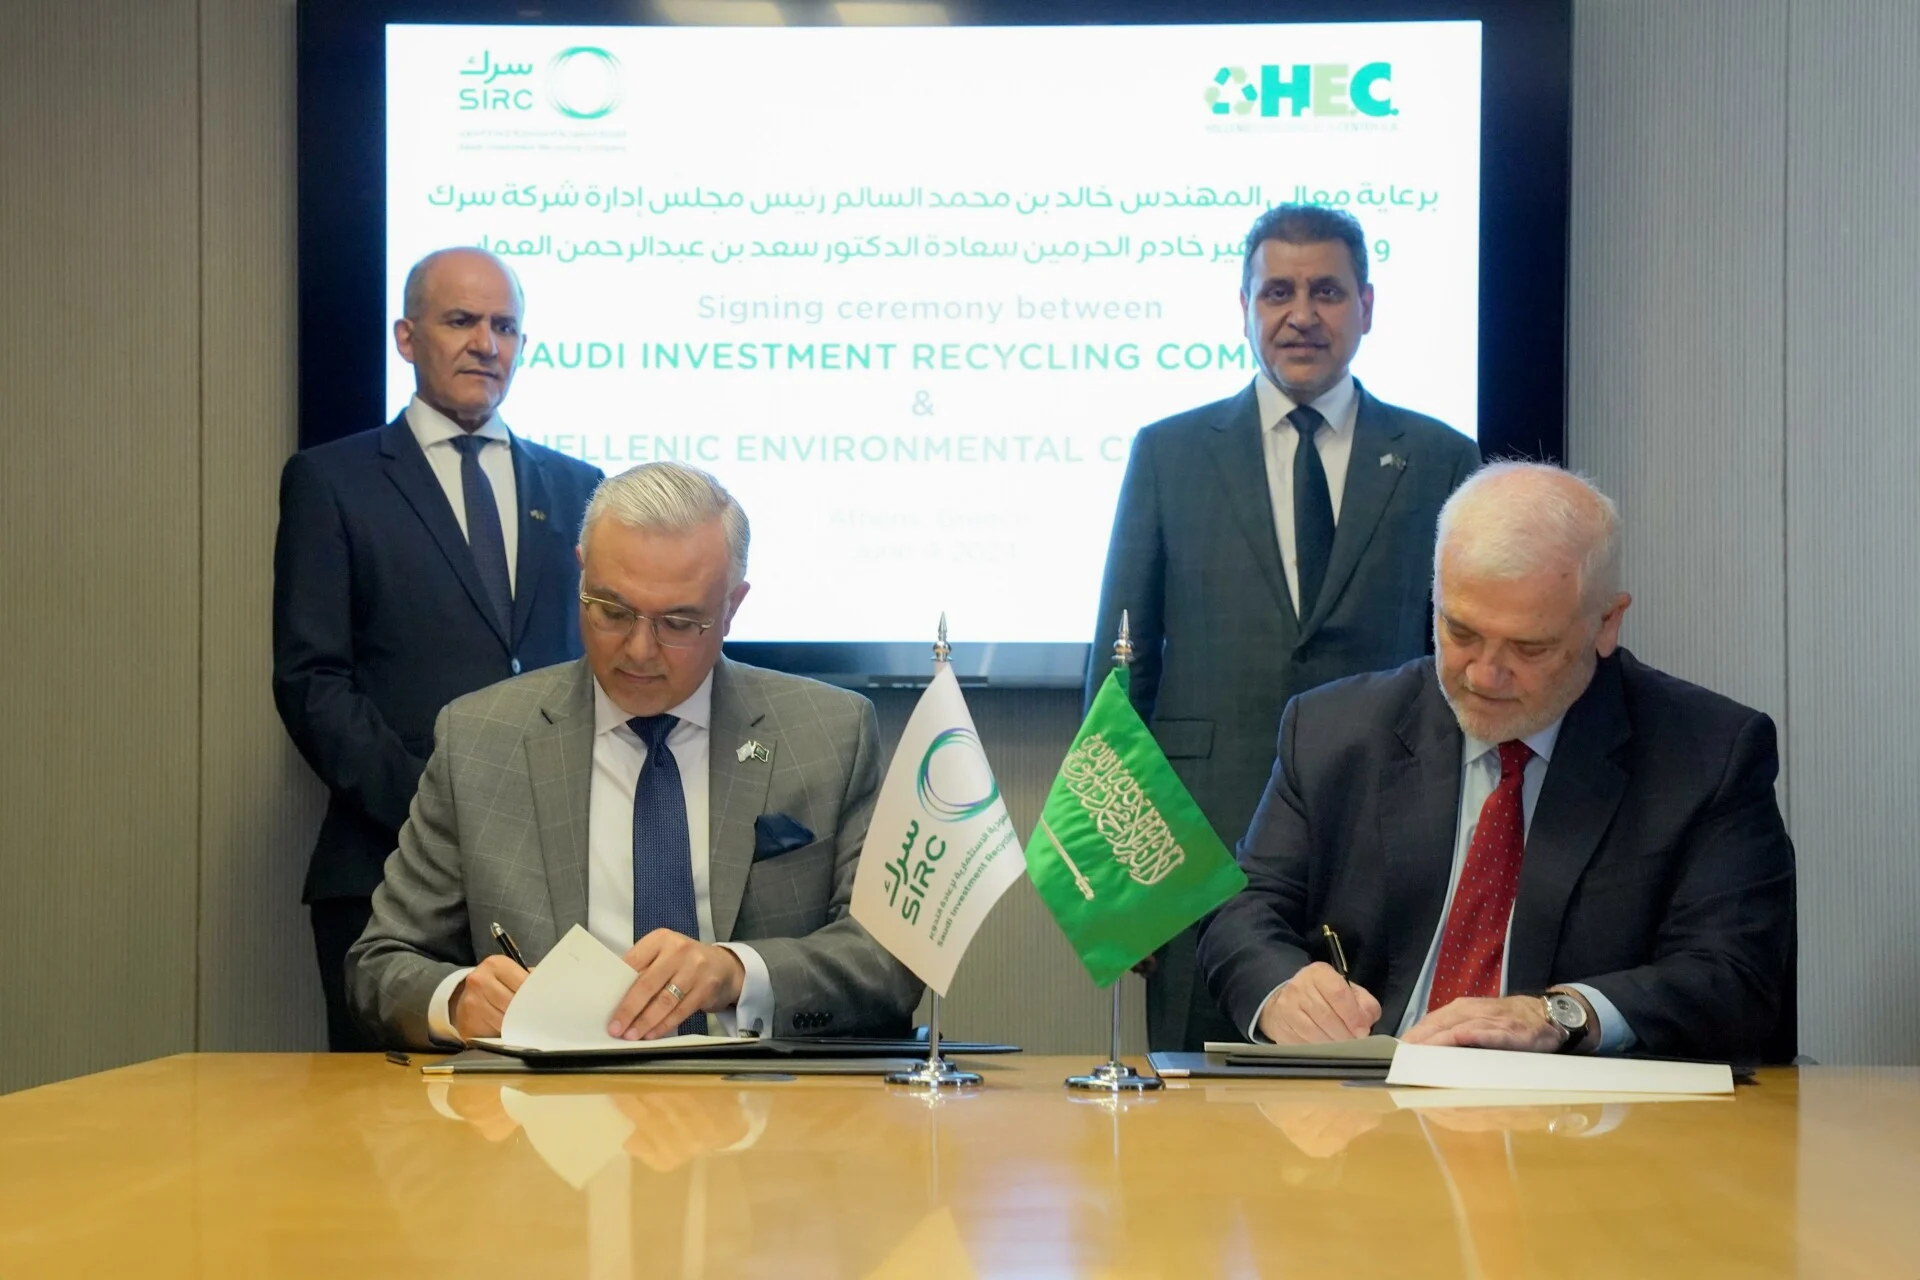 Υπογραφή συμφωνίας μεταξύ του σαουδαραβικού ομίλου SIRC και της ελληνικής εταιρείας HEC